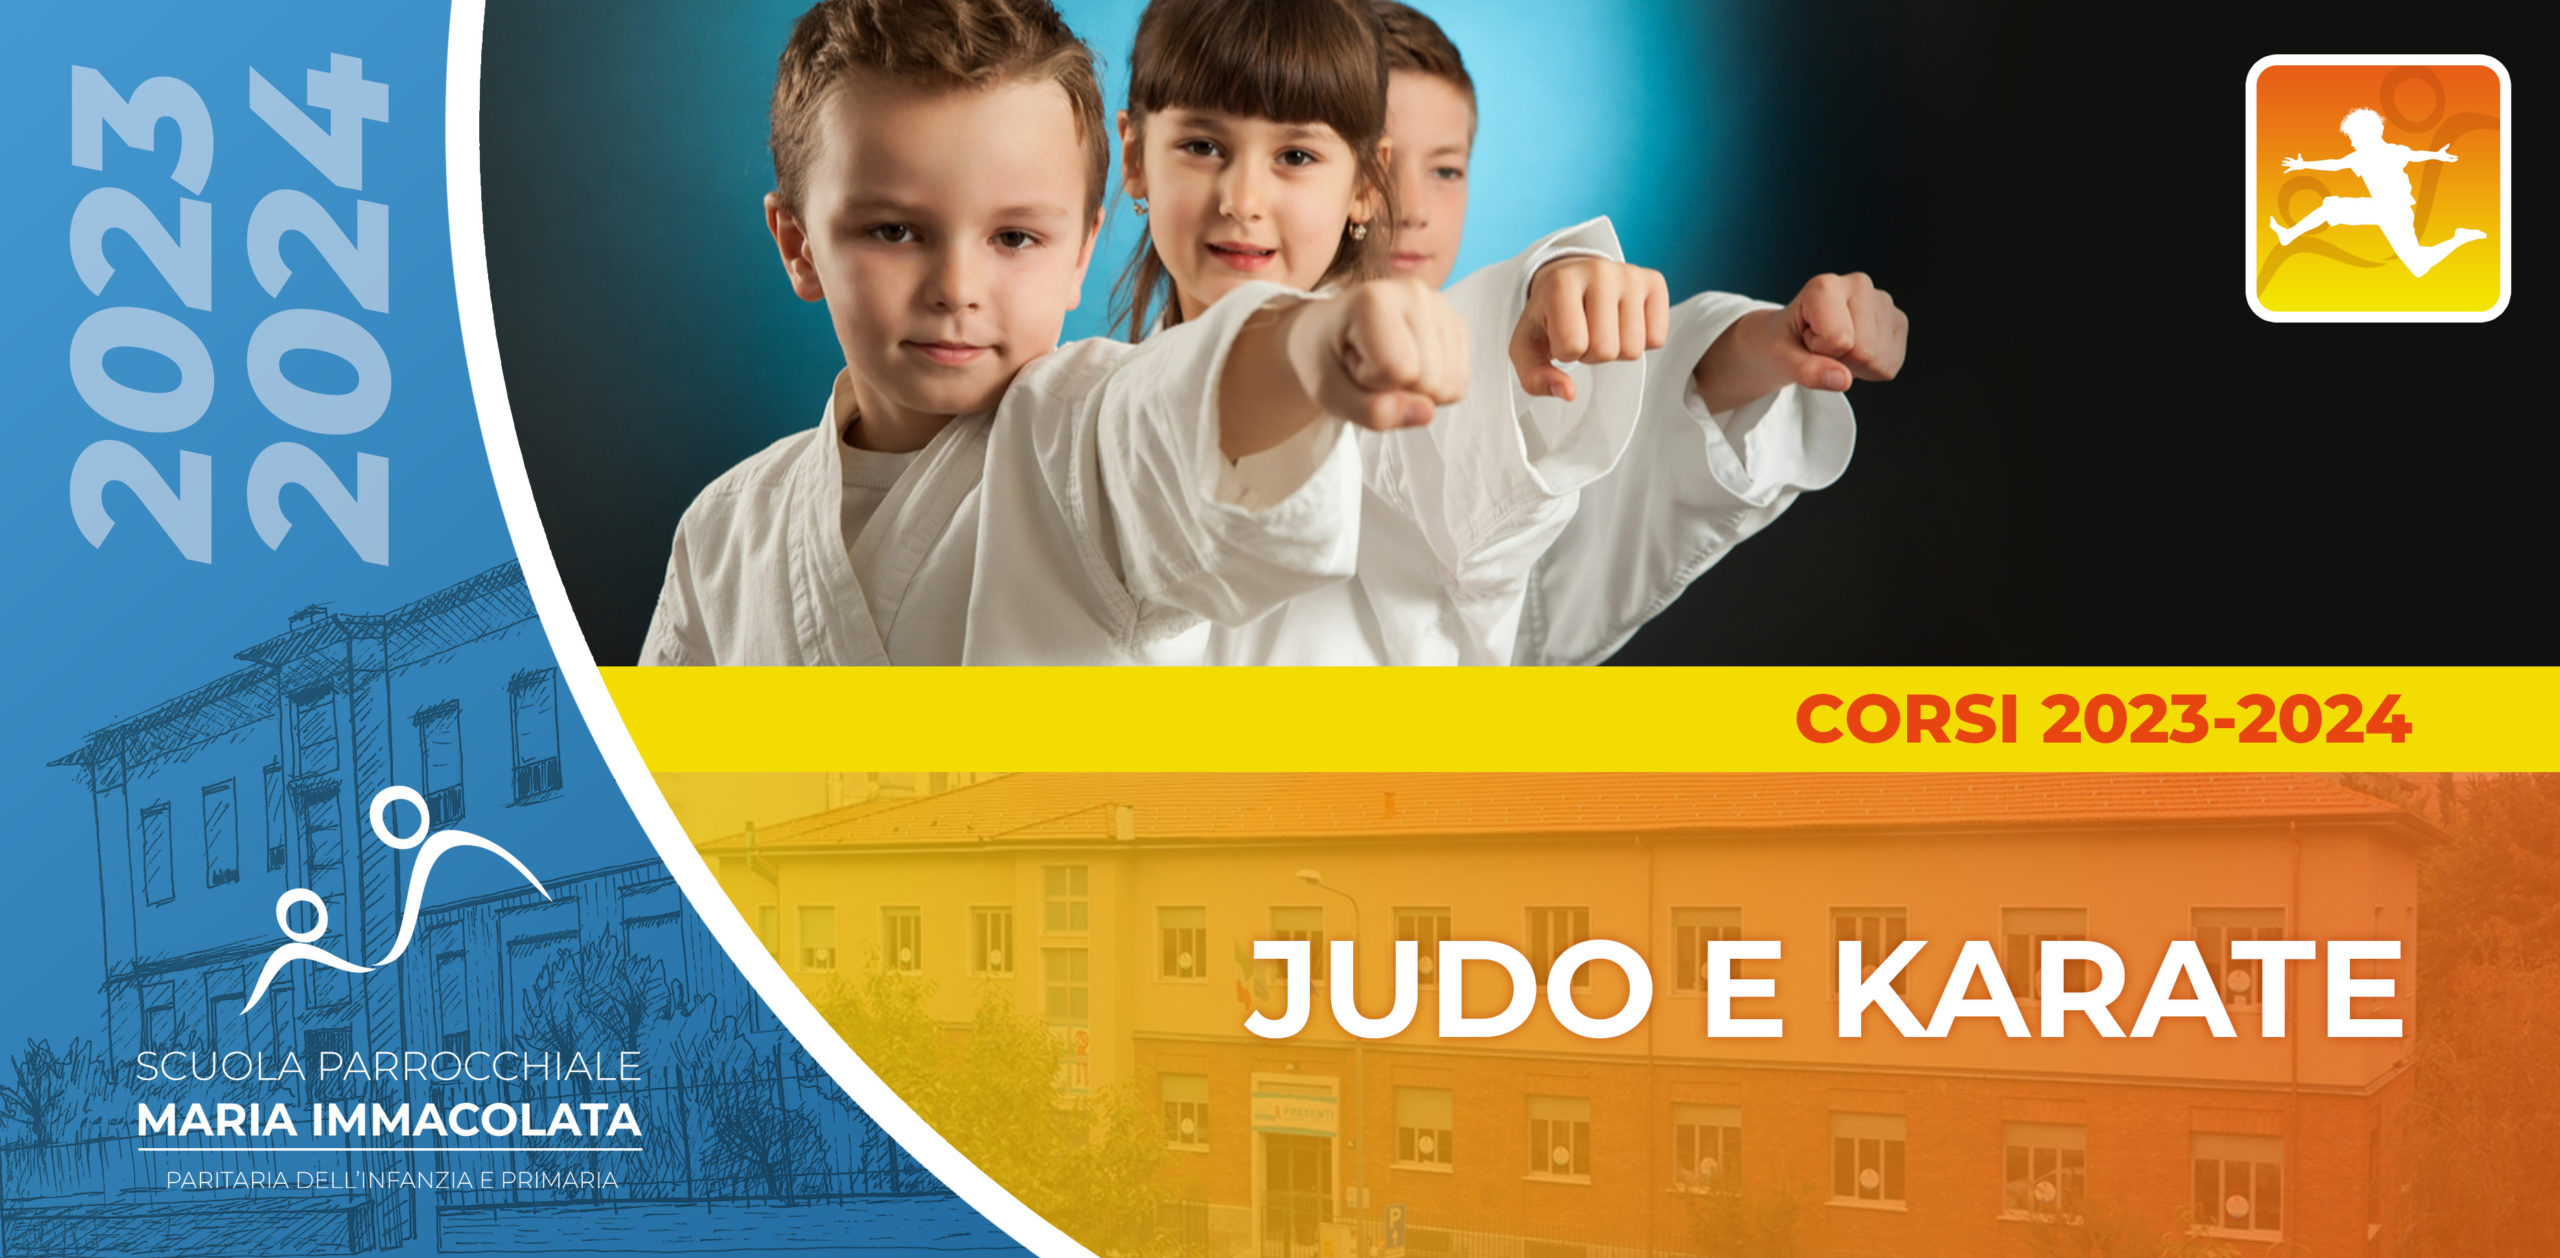 Corso di Judo e Karate 2023/2024